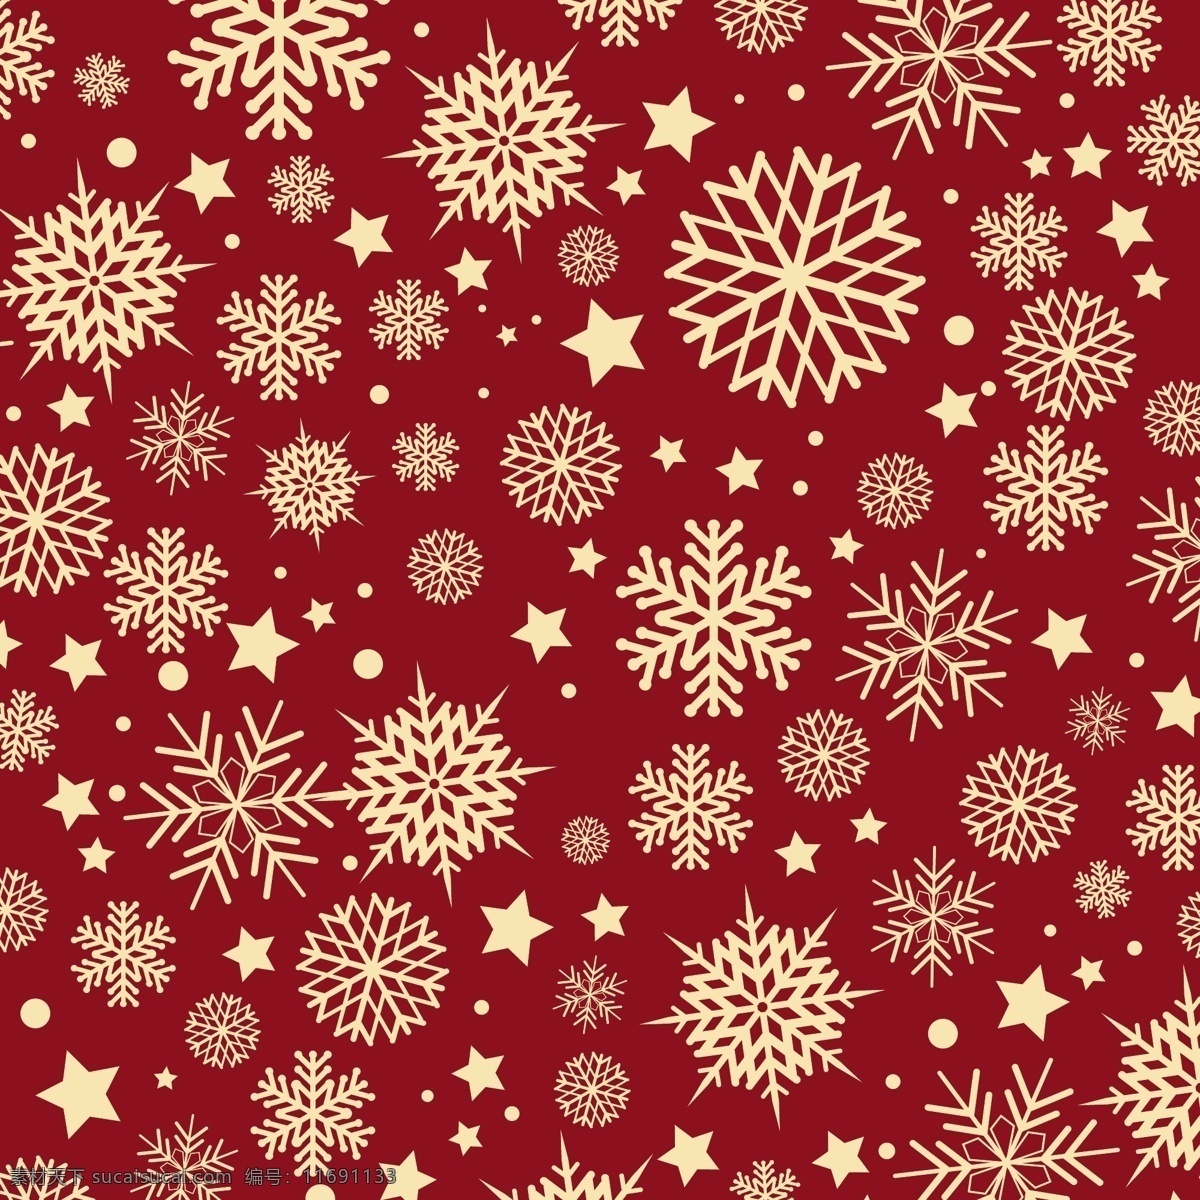 雪花 红色 背景 图案 背景图案 圣诞节 抽象的 圣诞快乐 冬天快乐 饰品 红色的 星星 圣诞背景 红色背景 庆典 节日 圣诞节的图案 冬天的背景